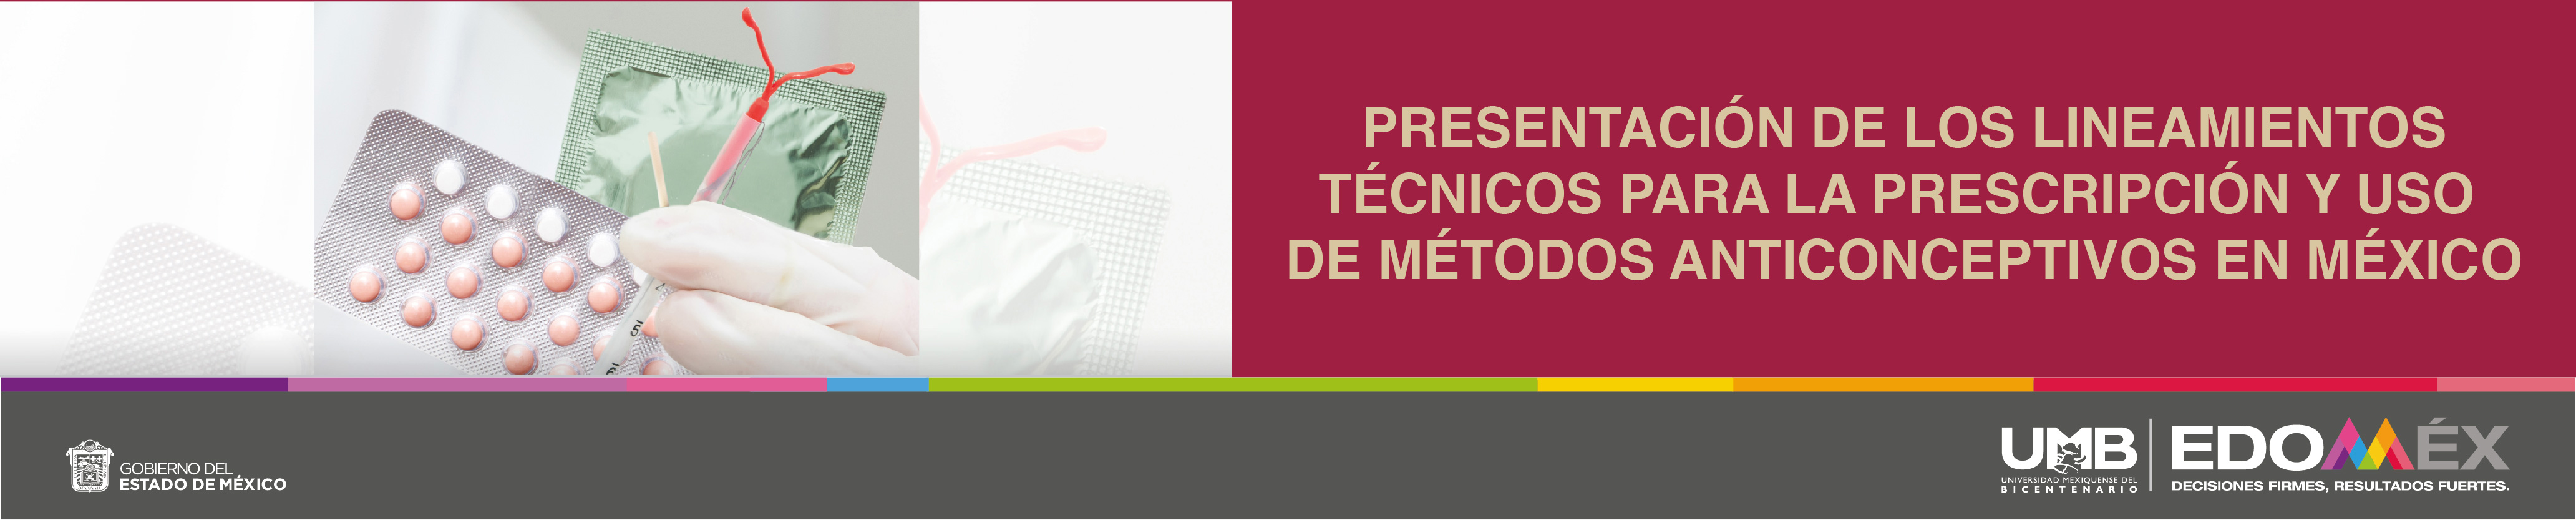 lineamientos-tecnicos-para-la-prescripcion-y-uso-de-metodos-anticonceptivos-en-mexico